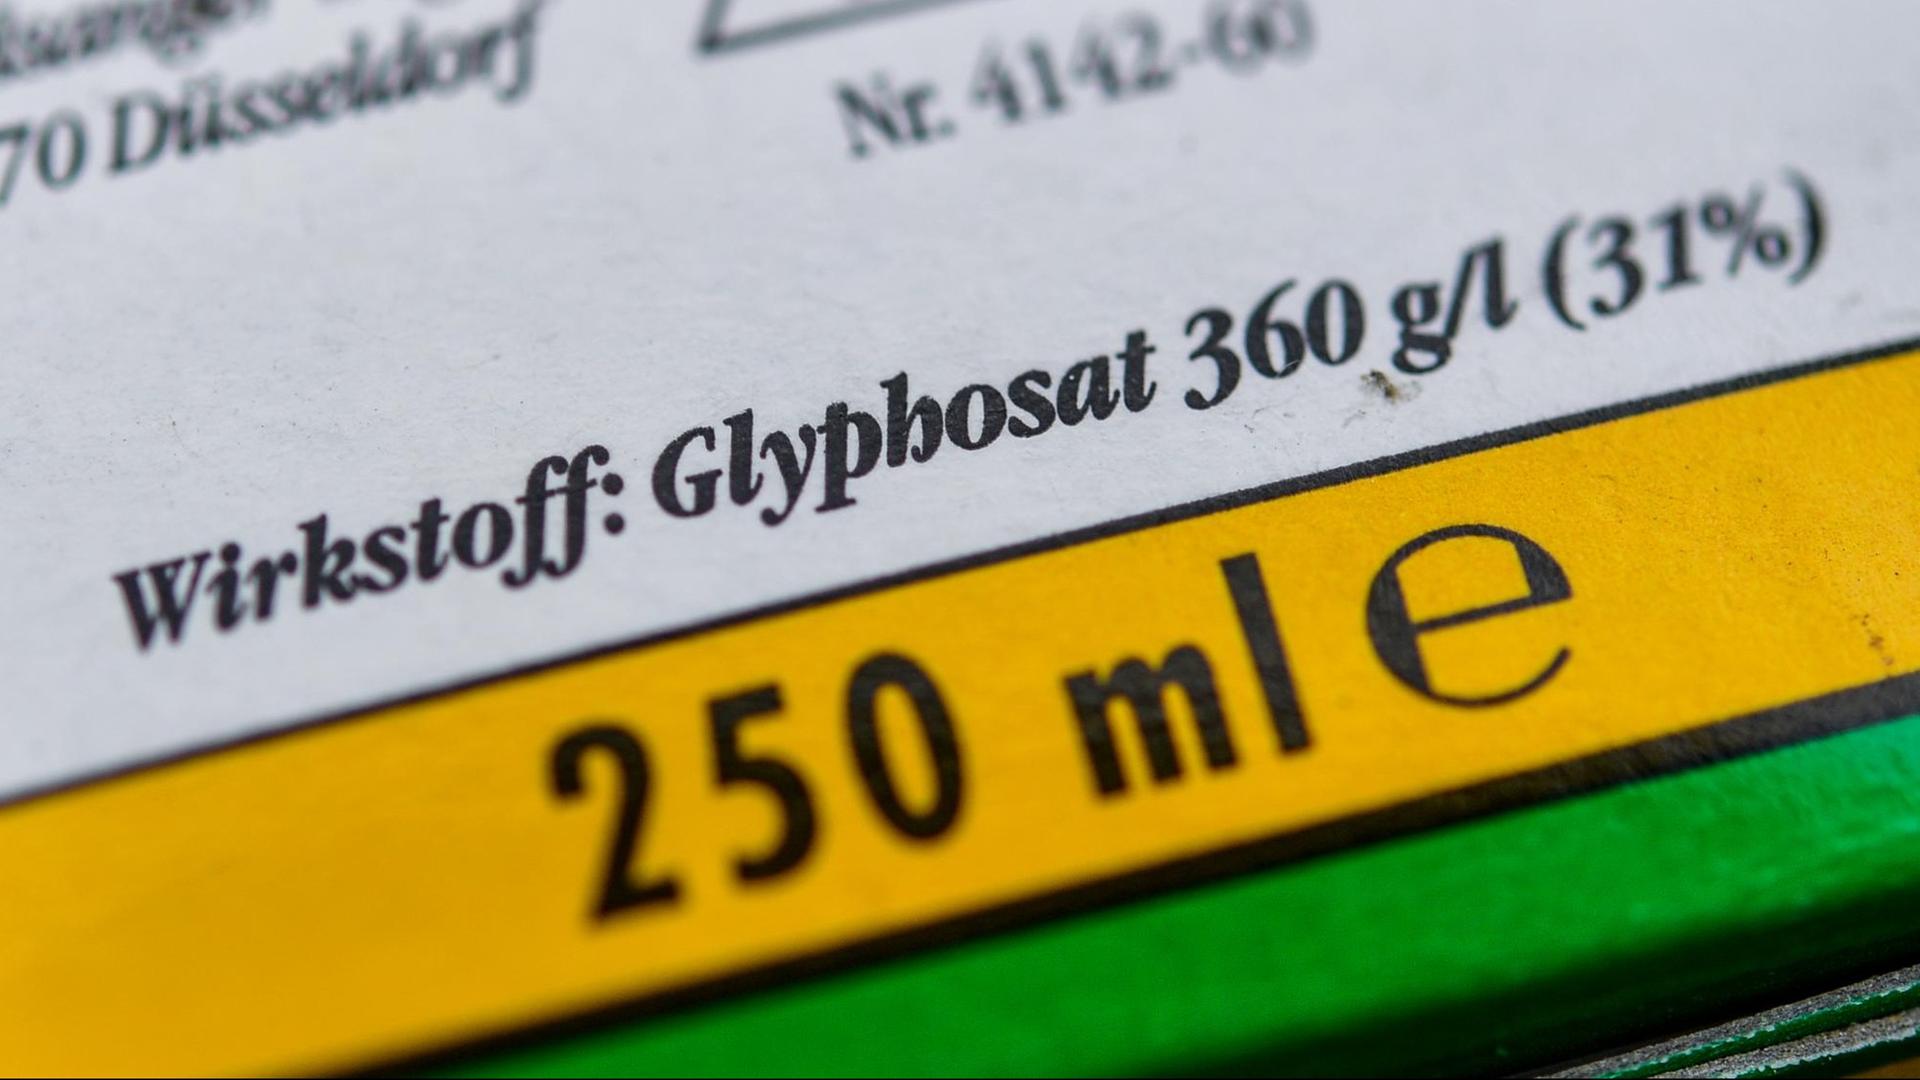 Die Verpackung eines Unkrautvernichtungsmittels, das den Wirkstoff Glyphosat enthält.